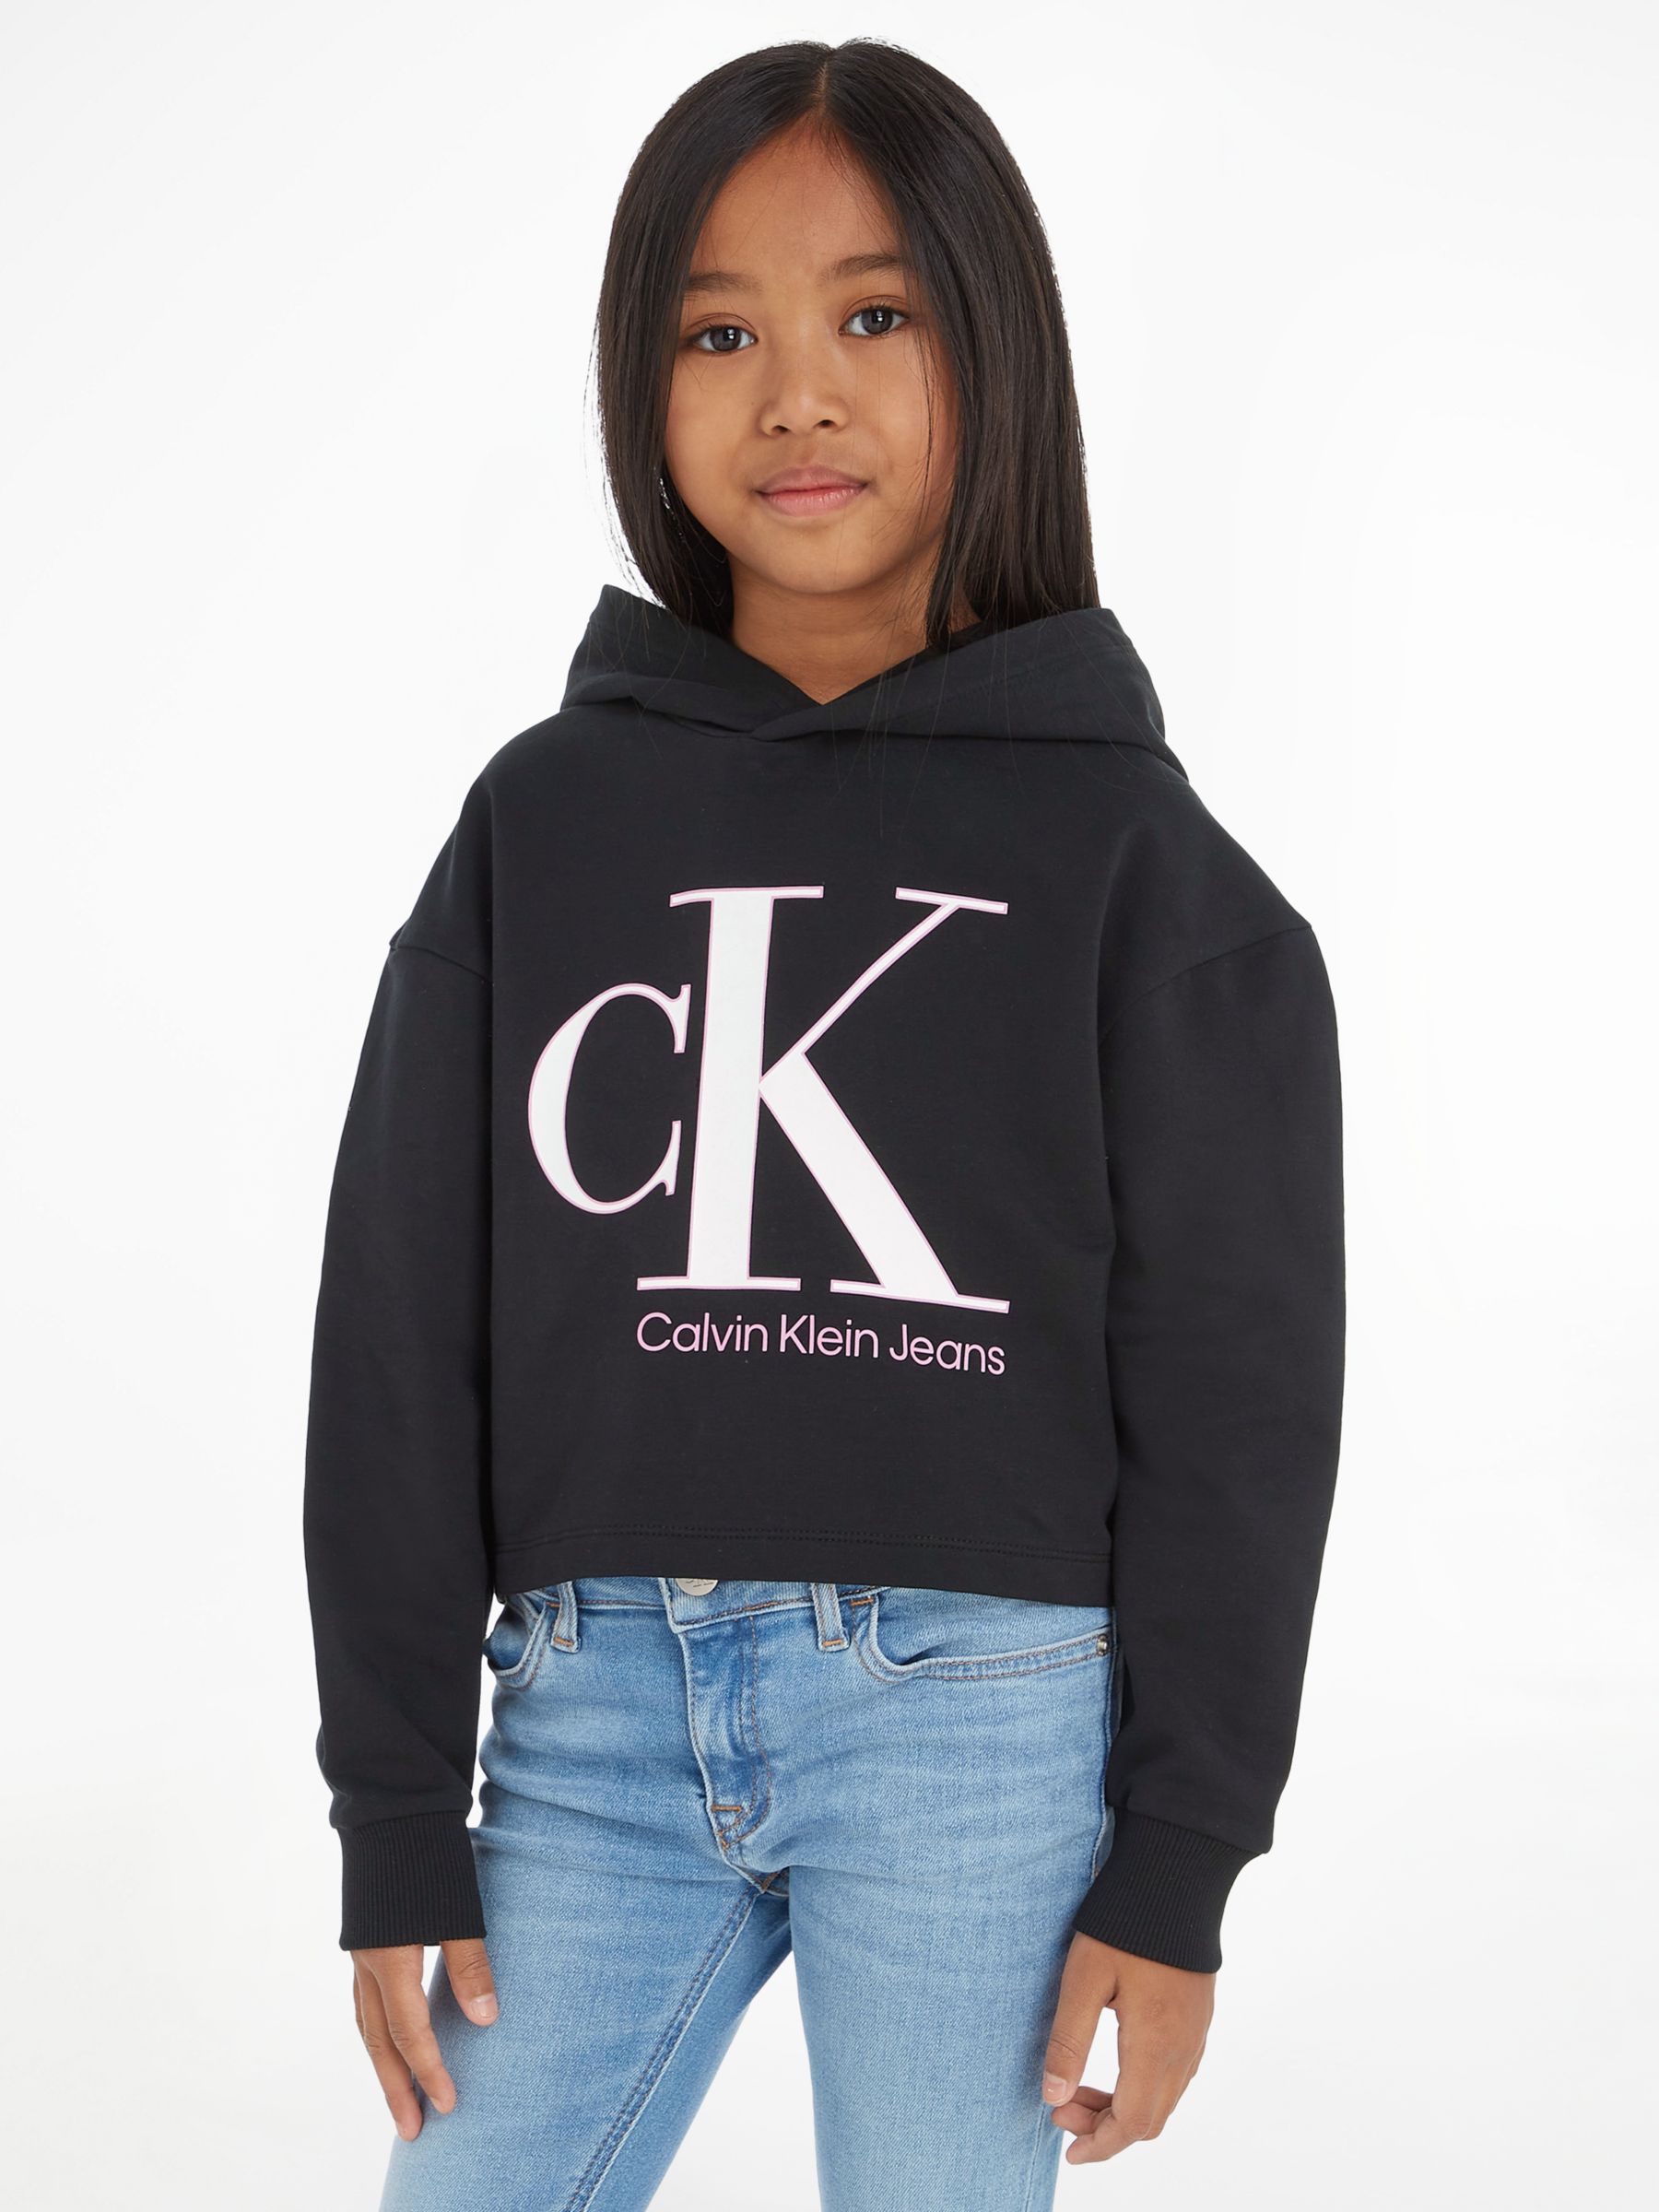 Calvin Klein Jeans Kids' Monogram Logo Hoodie, Ck Black, 4 years